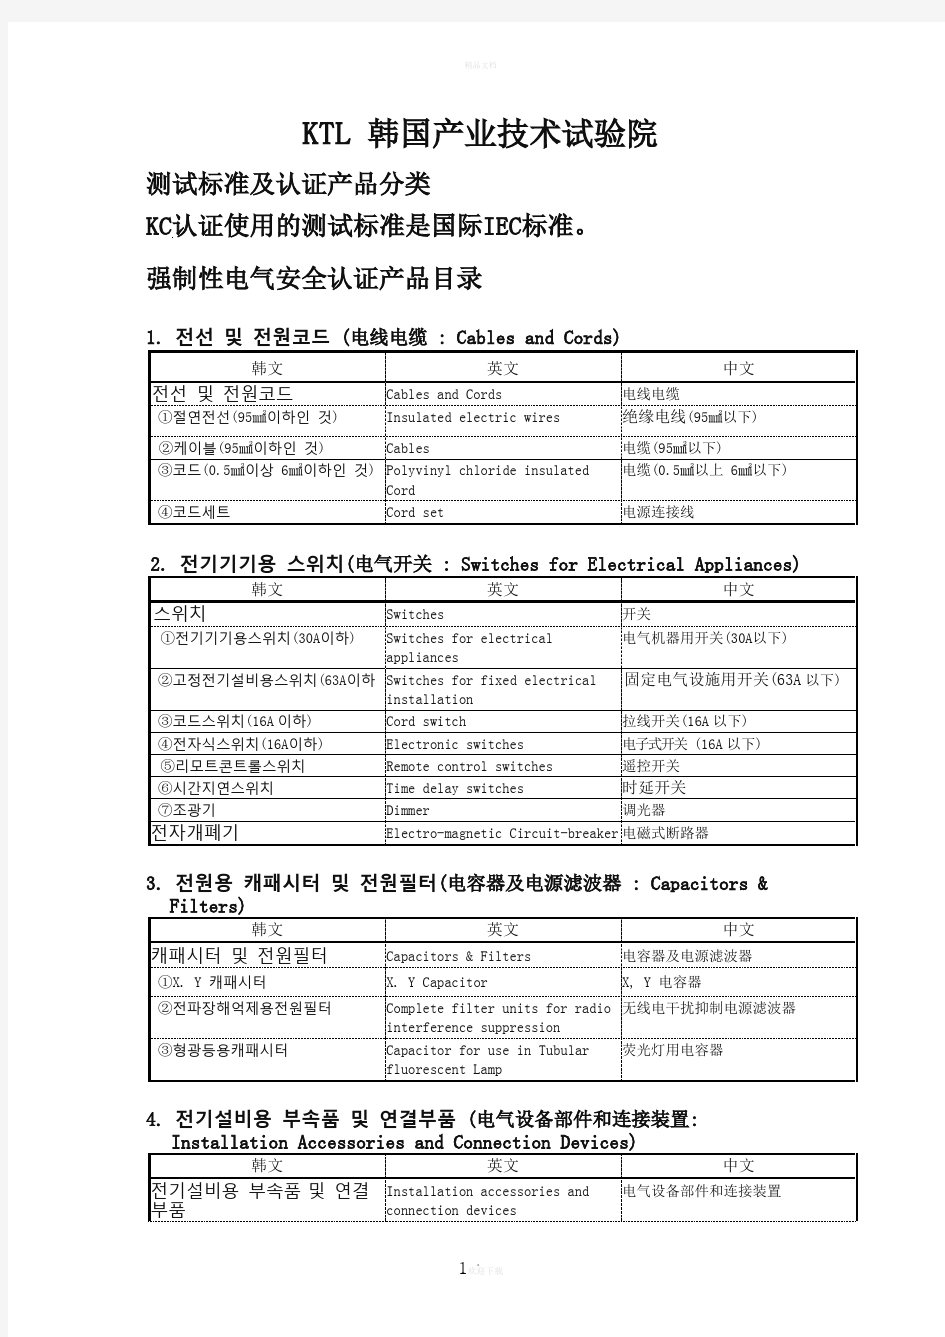 韩国KC认证产品目录及分类